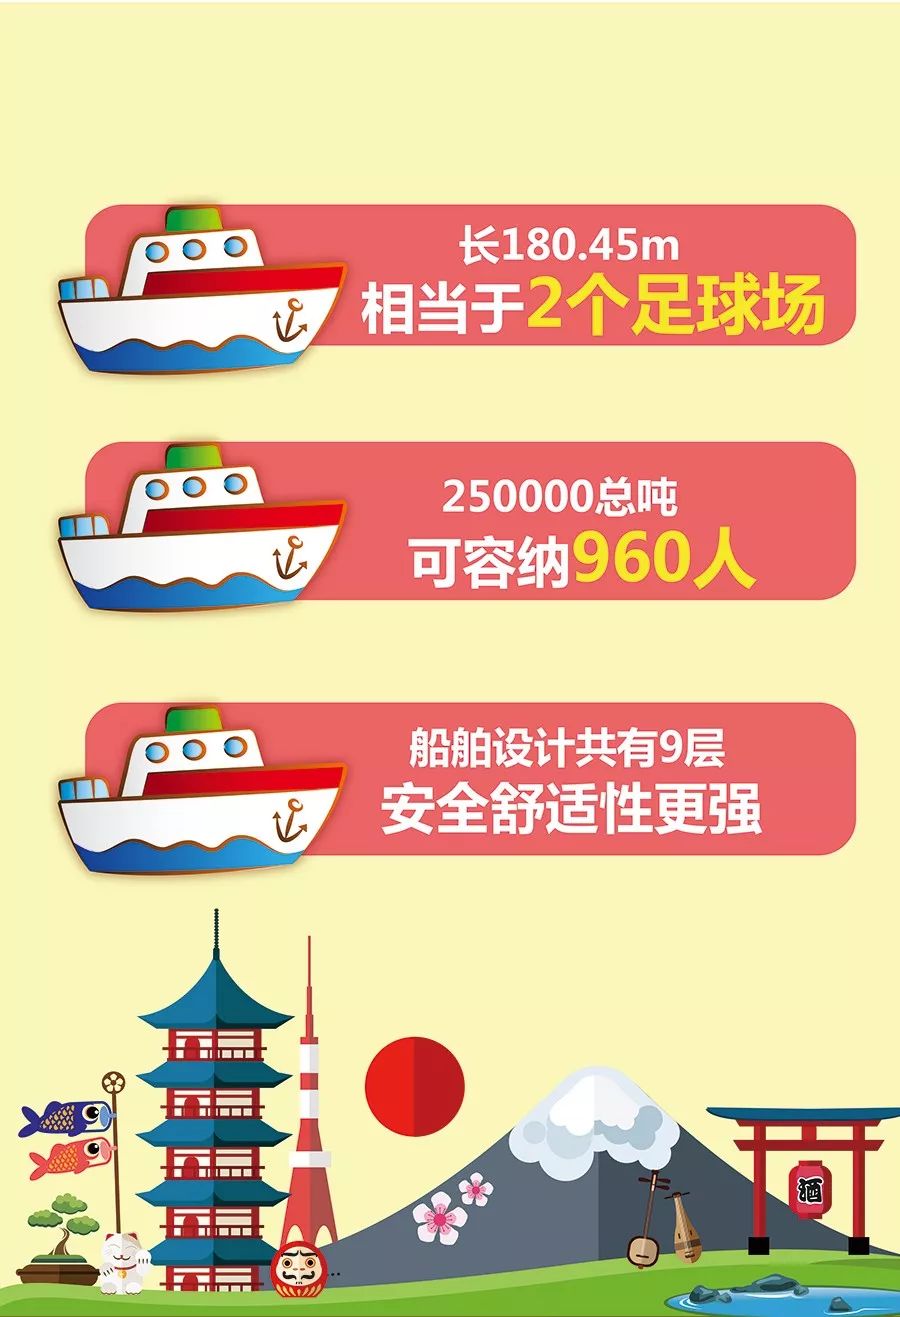 泰山号 去日本又一新玩法 超浪漫的邮轮之旅来了 旅游